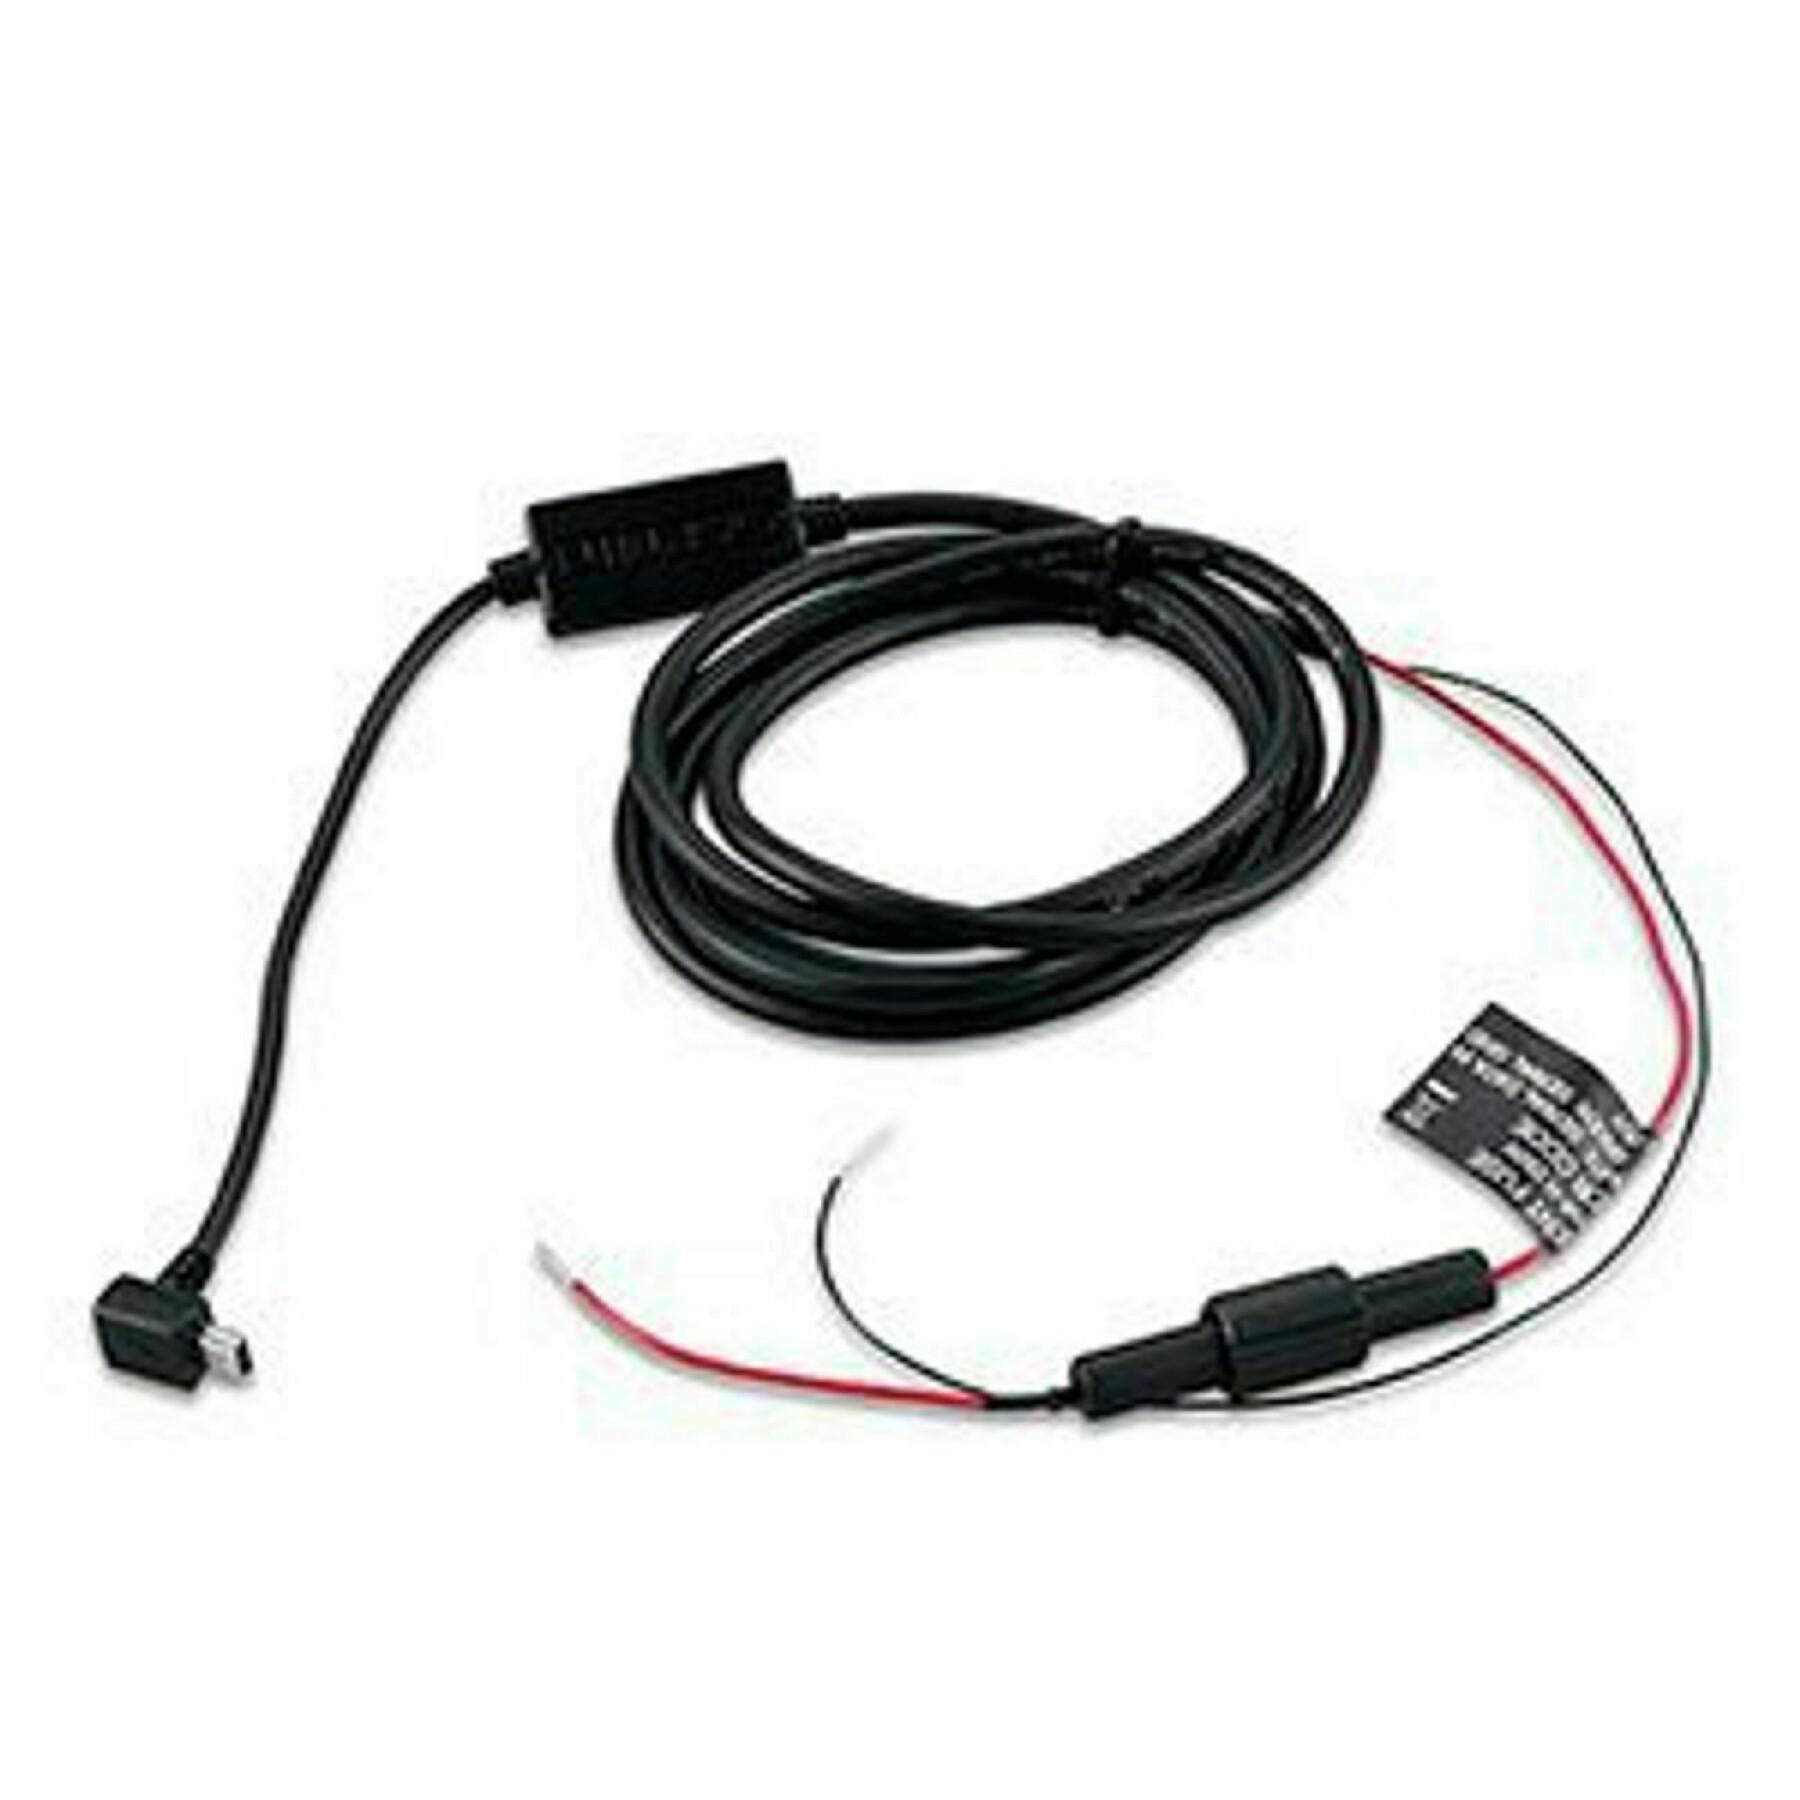 Usb power cable Garmin